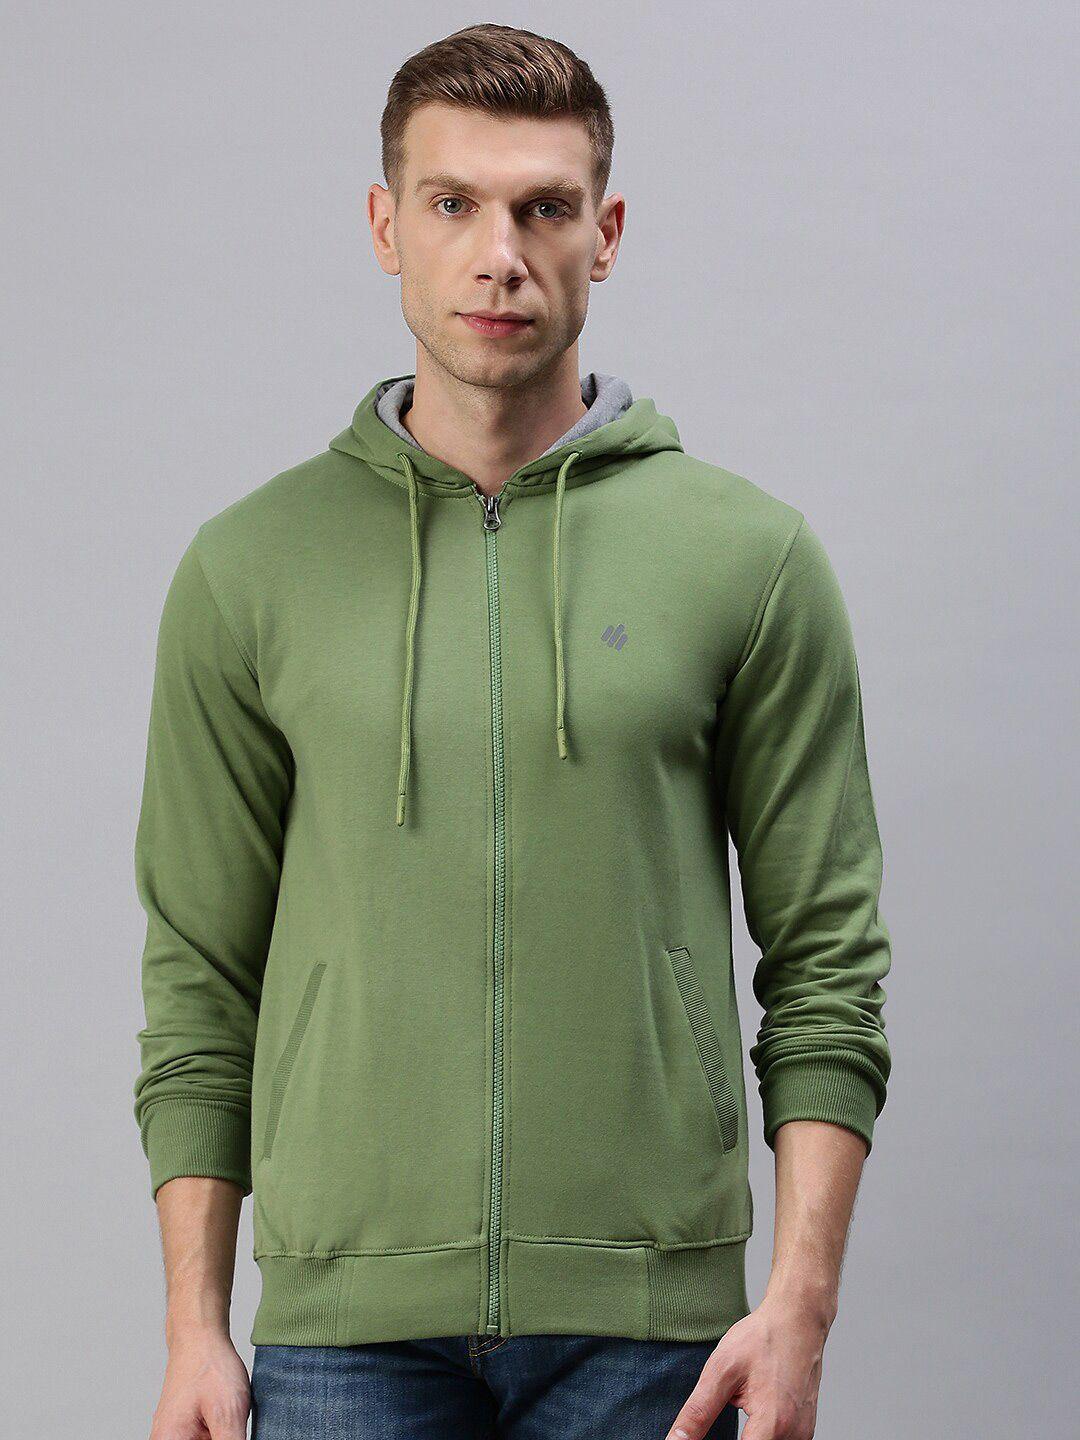 onn-men-olive-green-hooded-sweatshirt